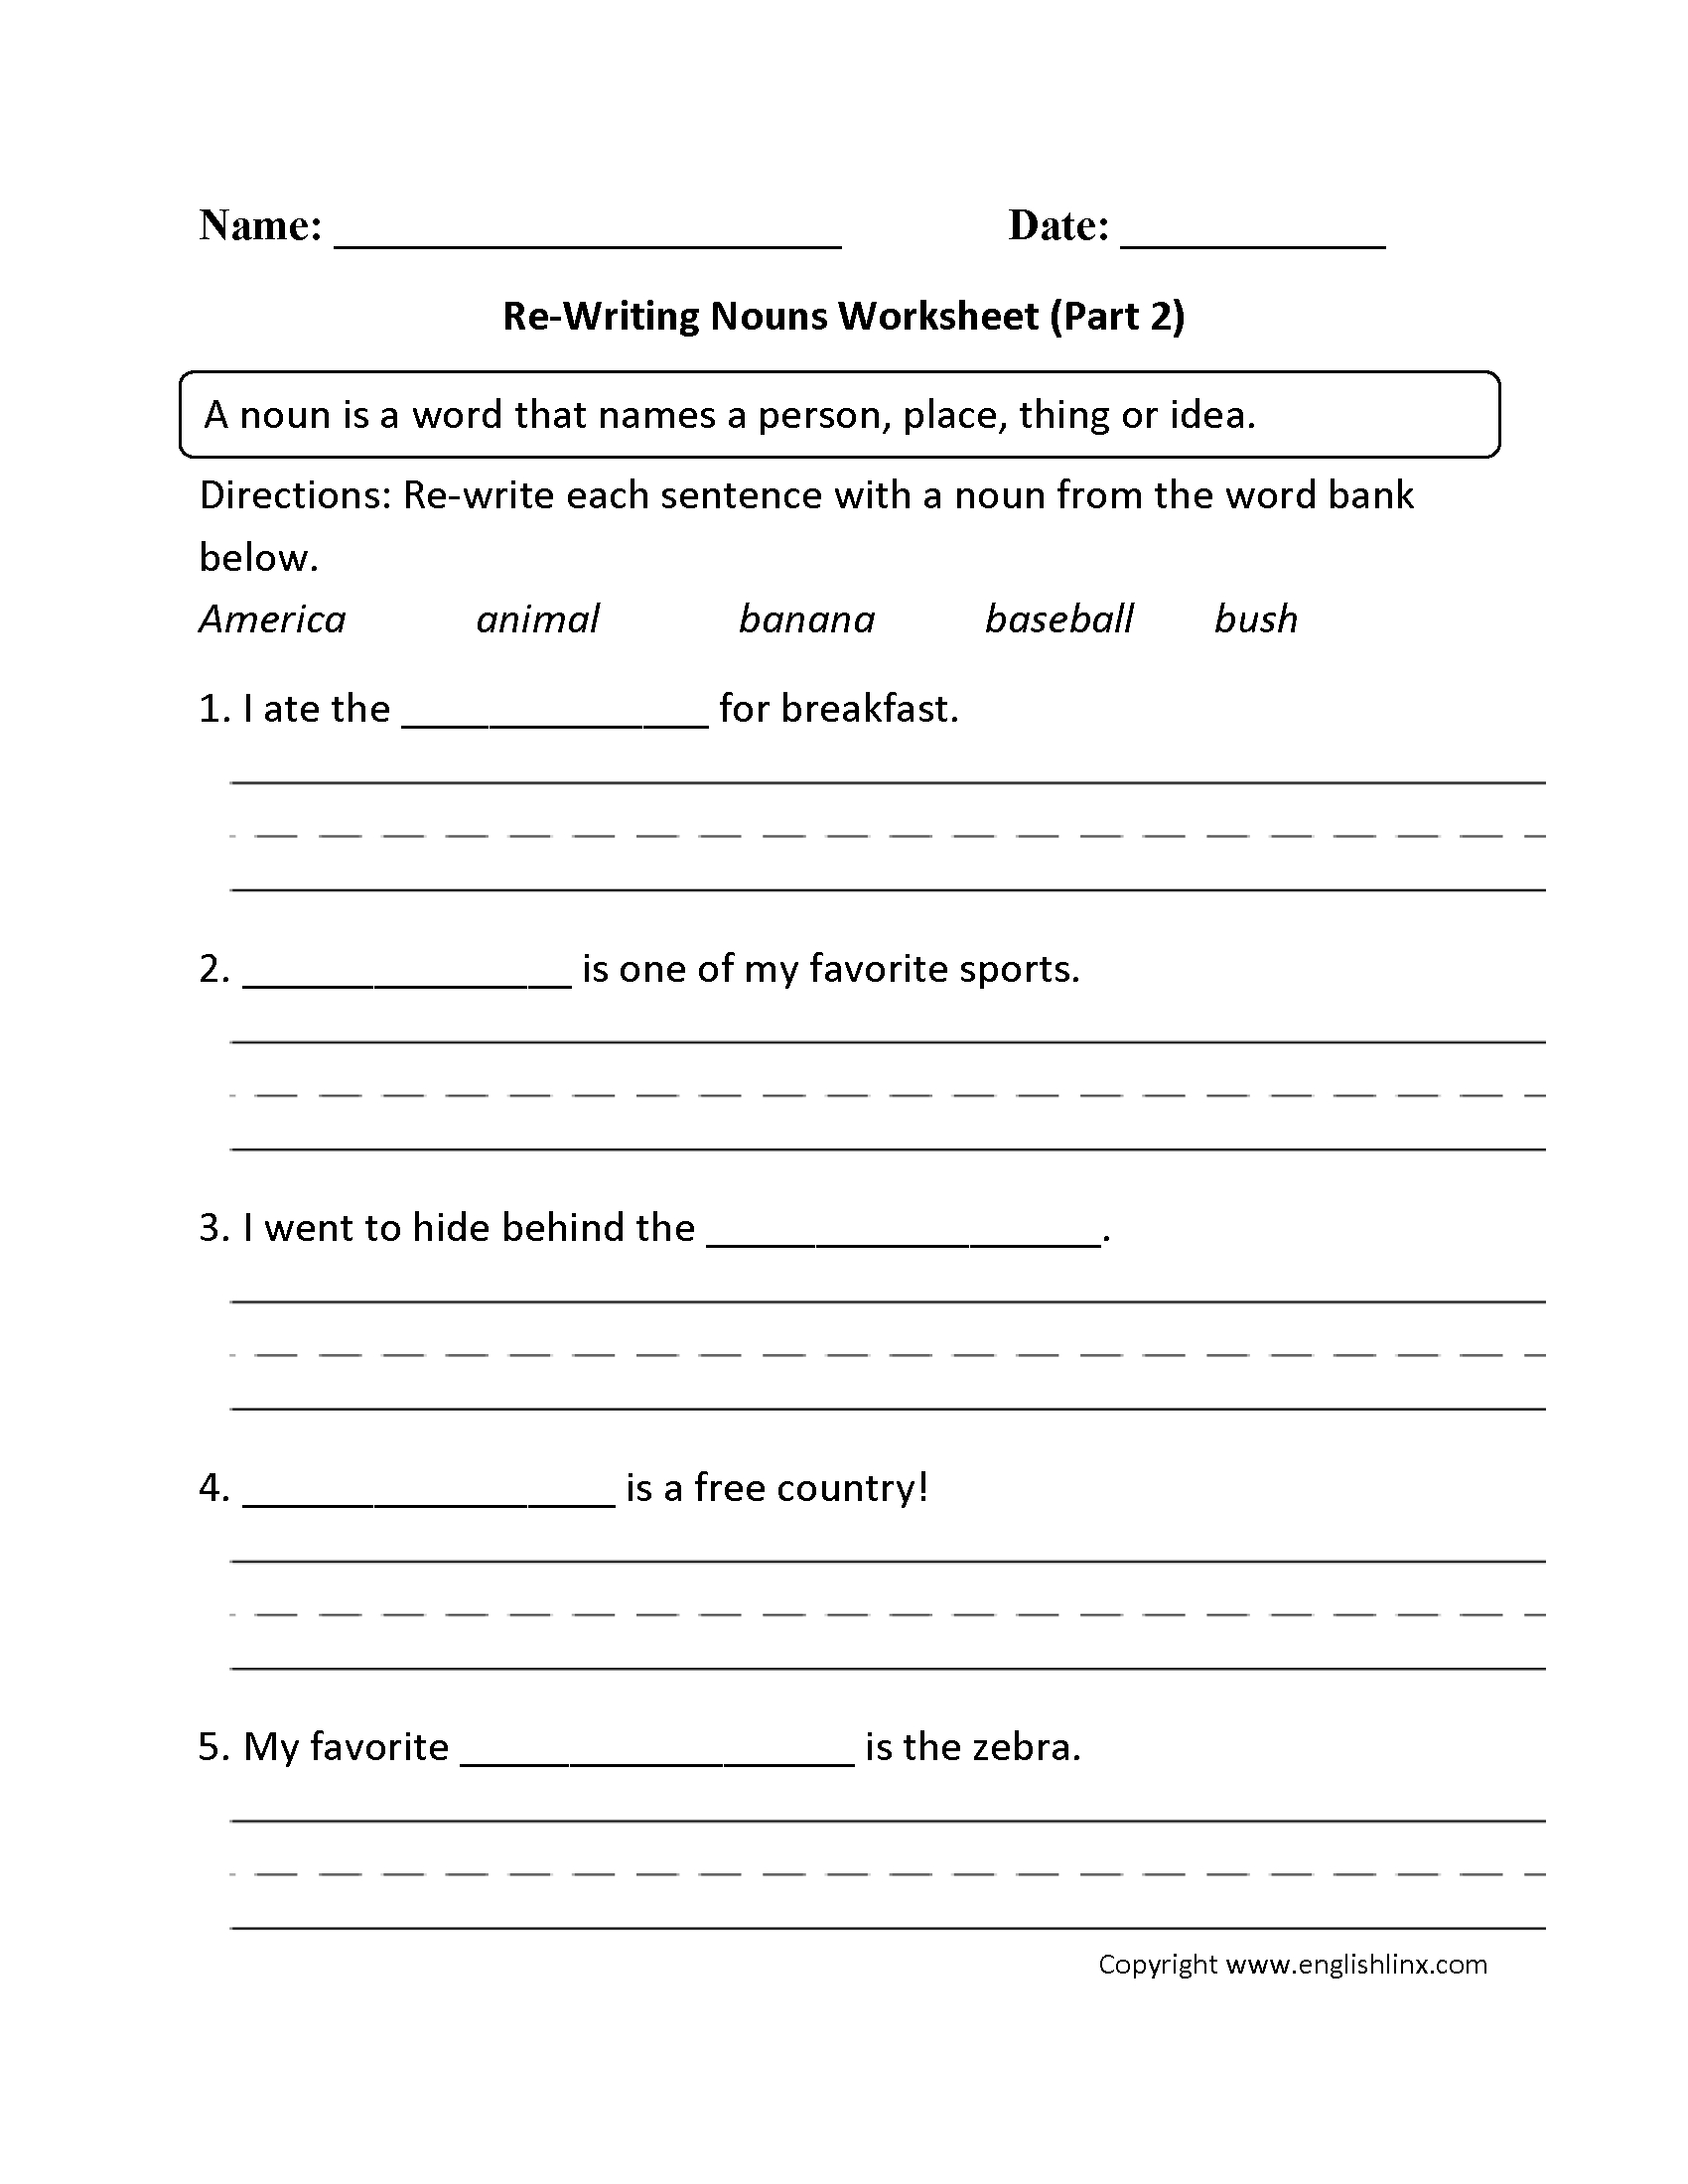 noun-worksheets-for-grade-1-db-excel